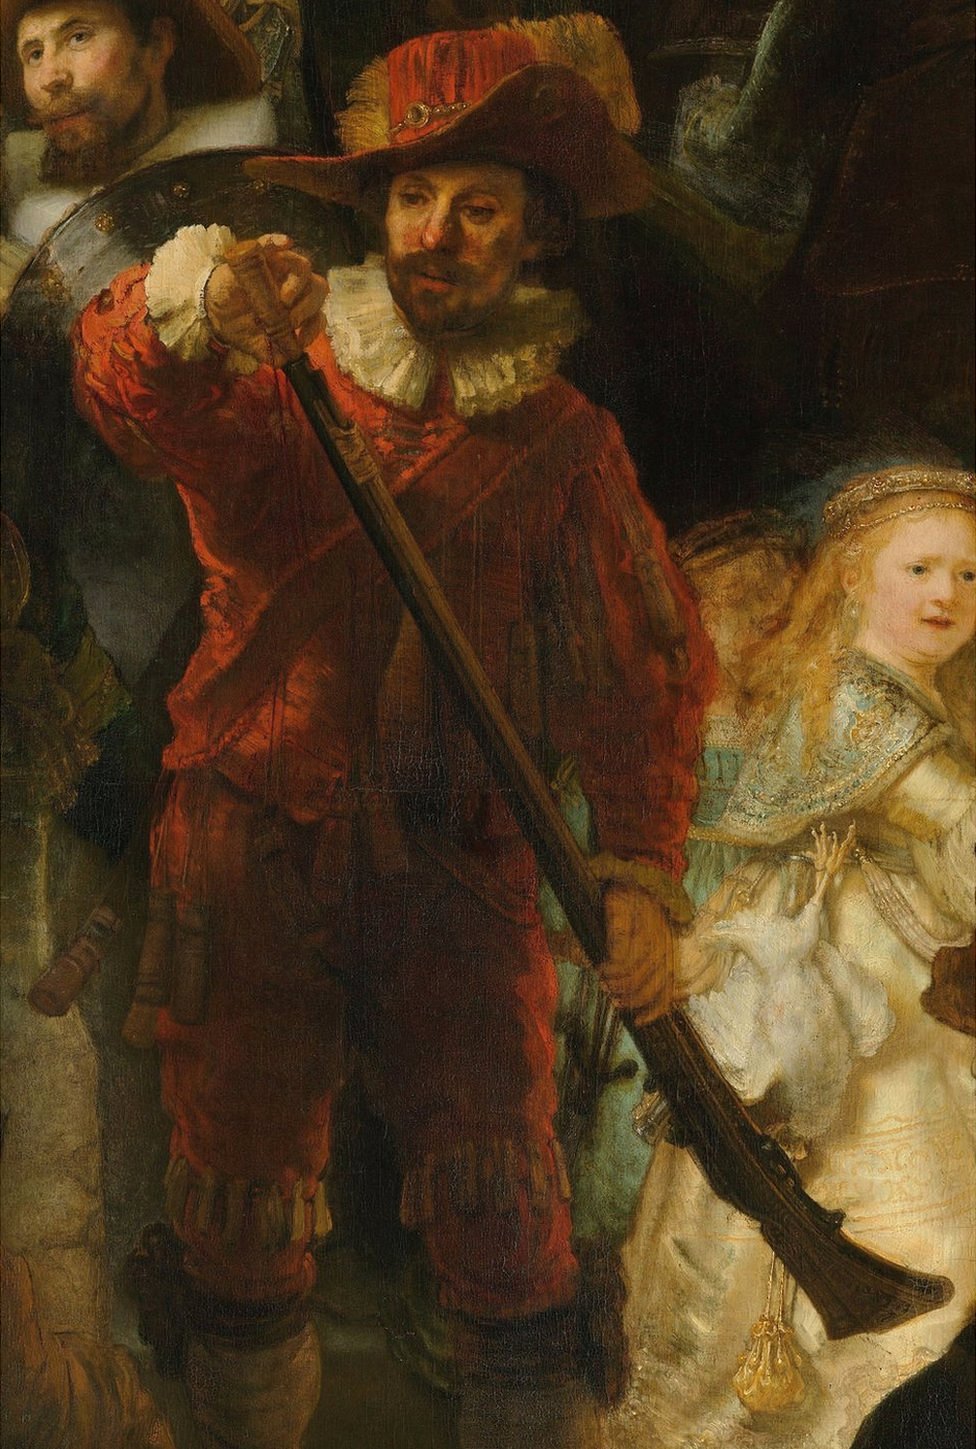 Mosquetero vestido de rojo con cuello y puños blancos, está cargando su mosquete con pólvora, y una joven vestida de dorado.